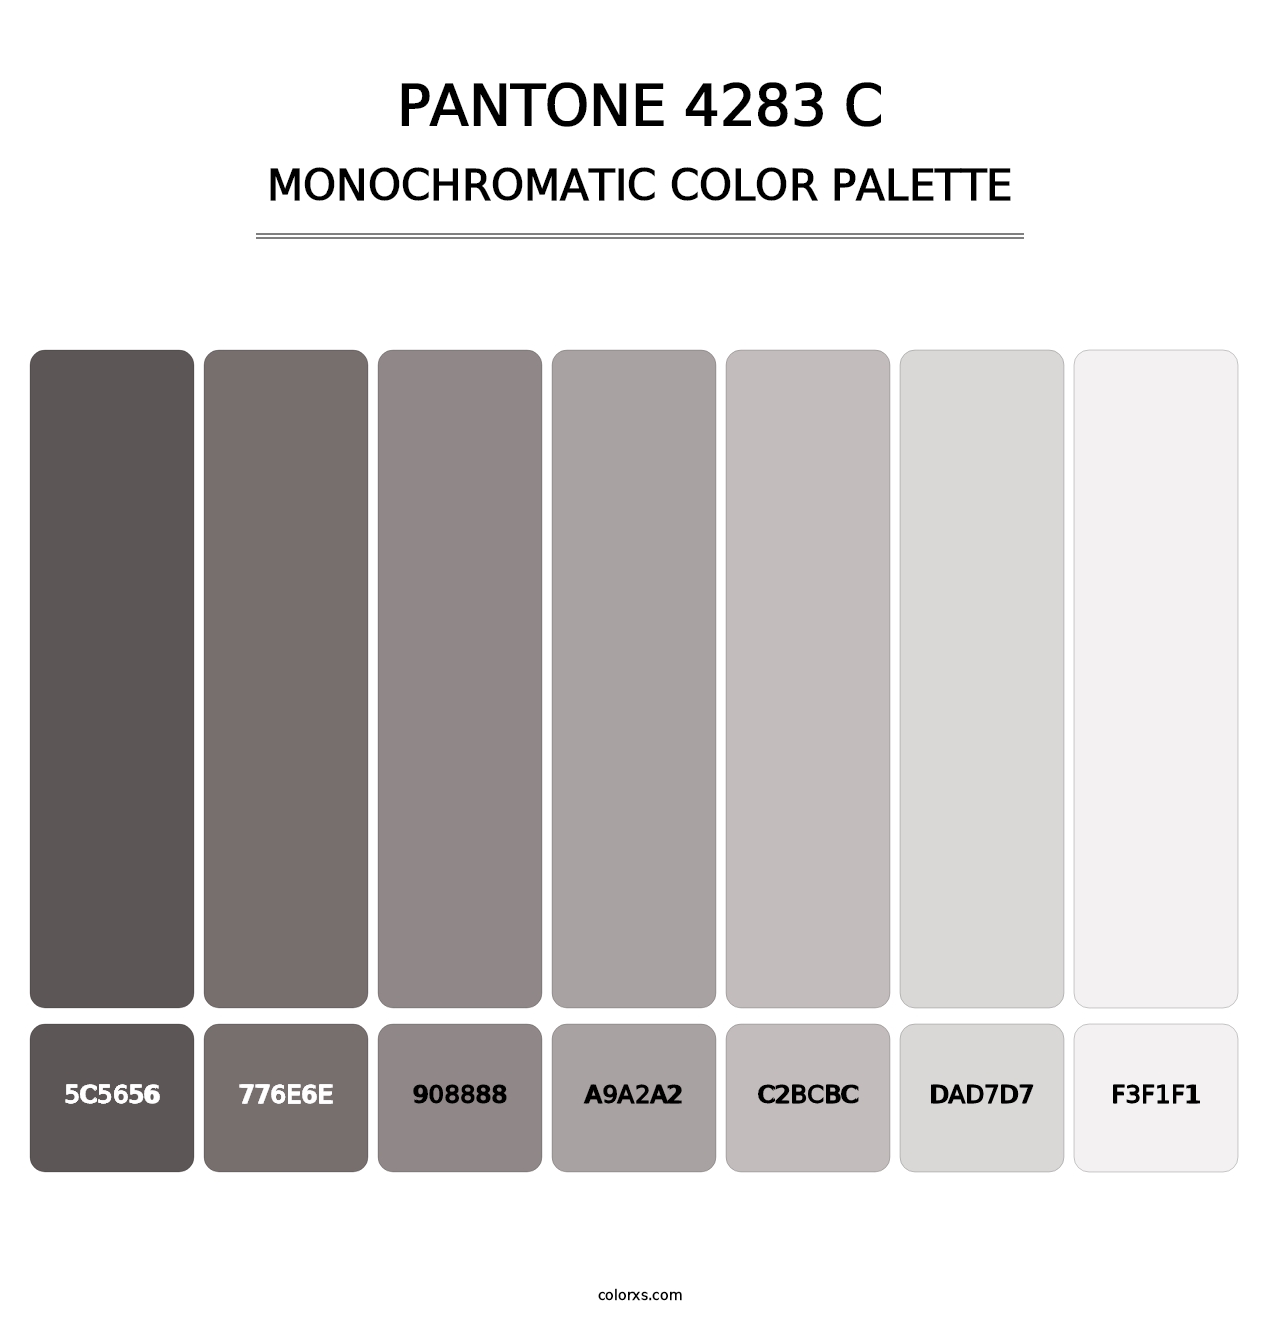 PANTONE 4283 C - Monochromatic Color Palette